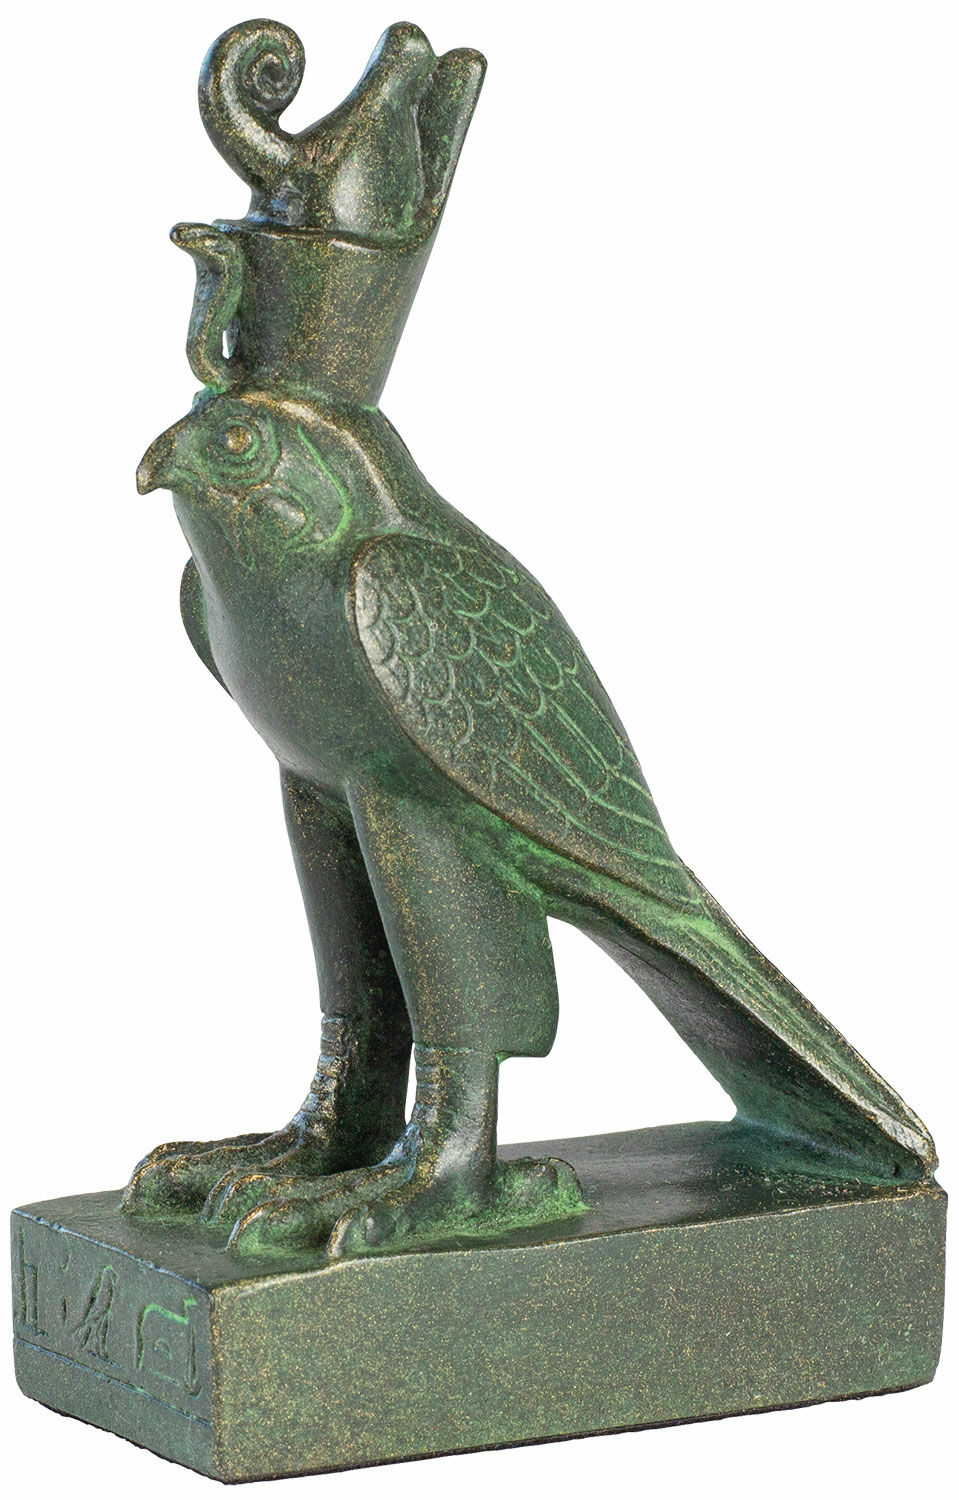 Skulptur "Horus Falcon", støbt